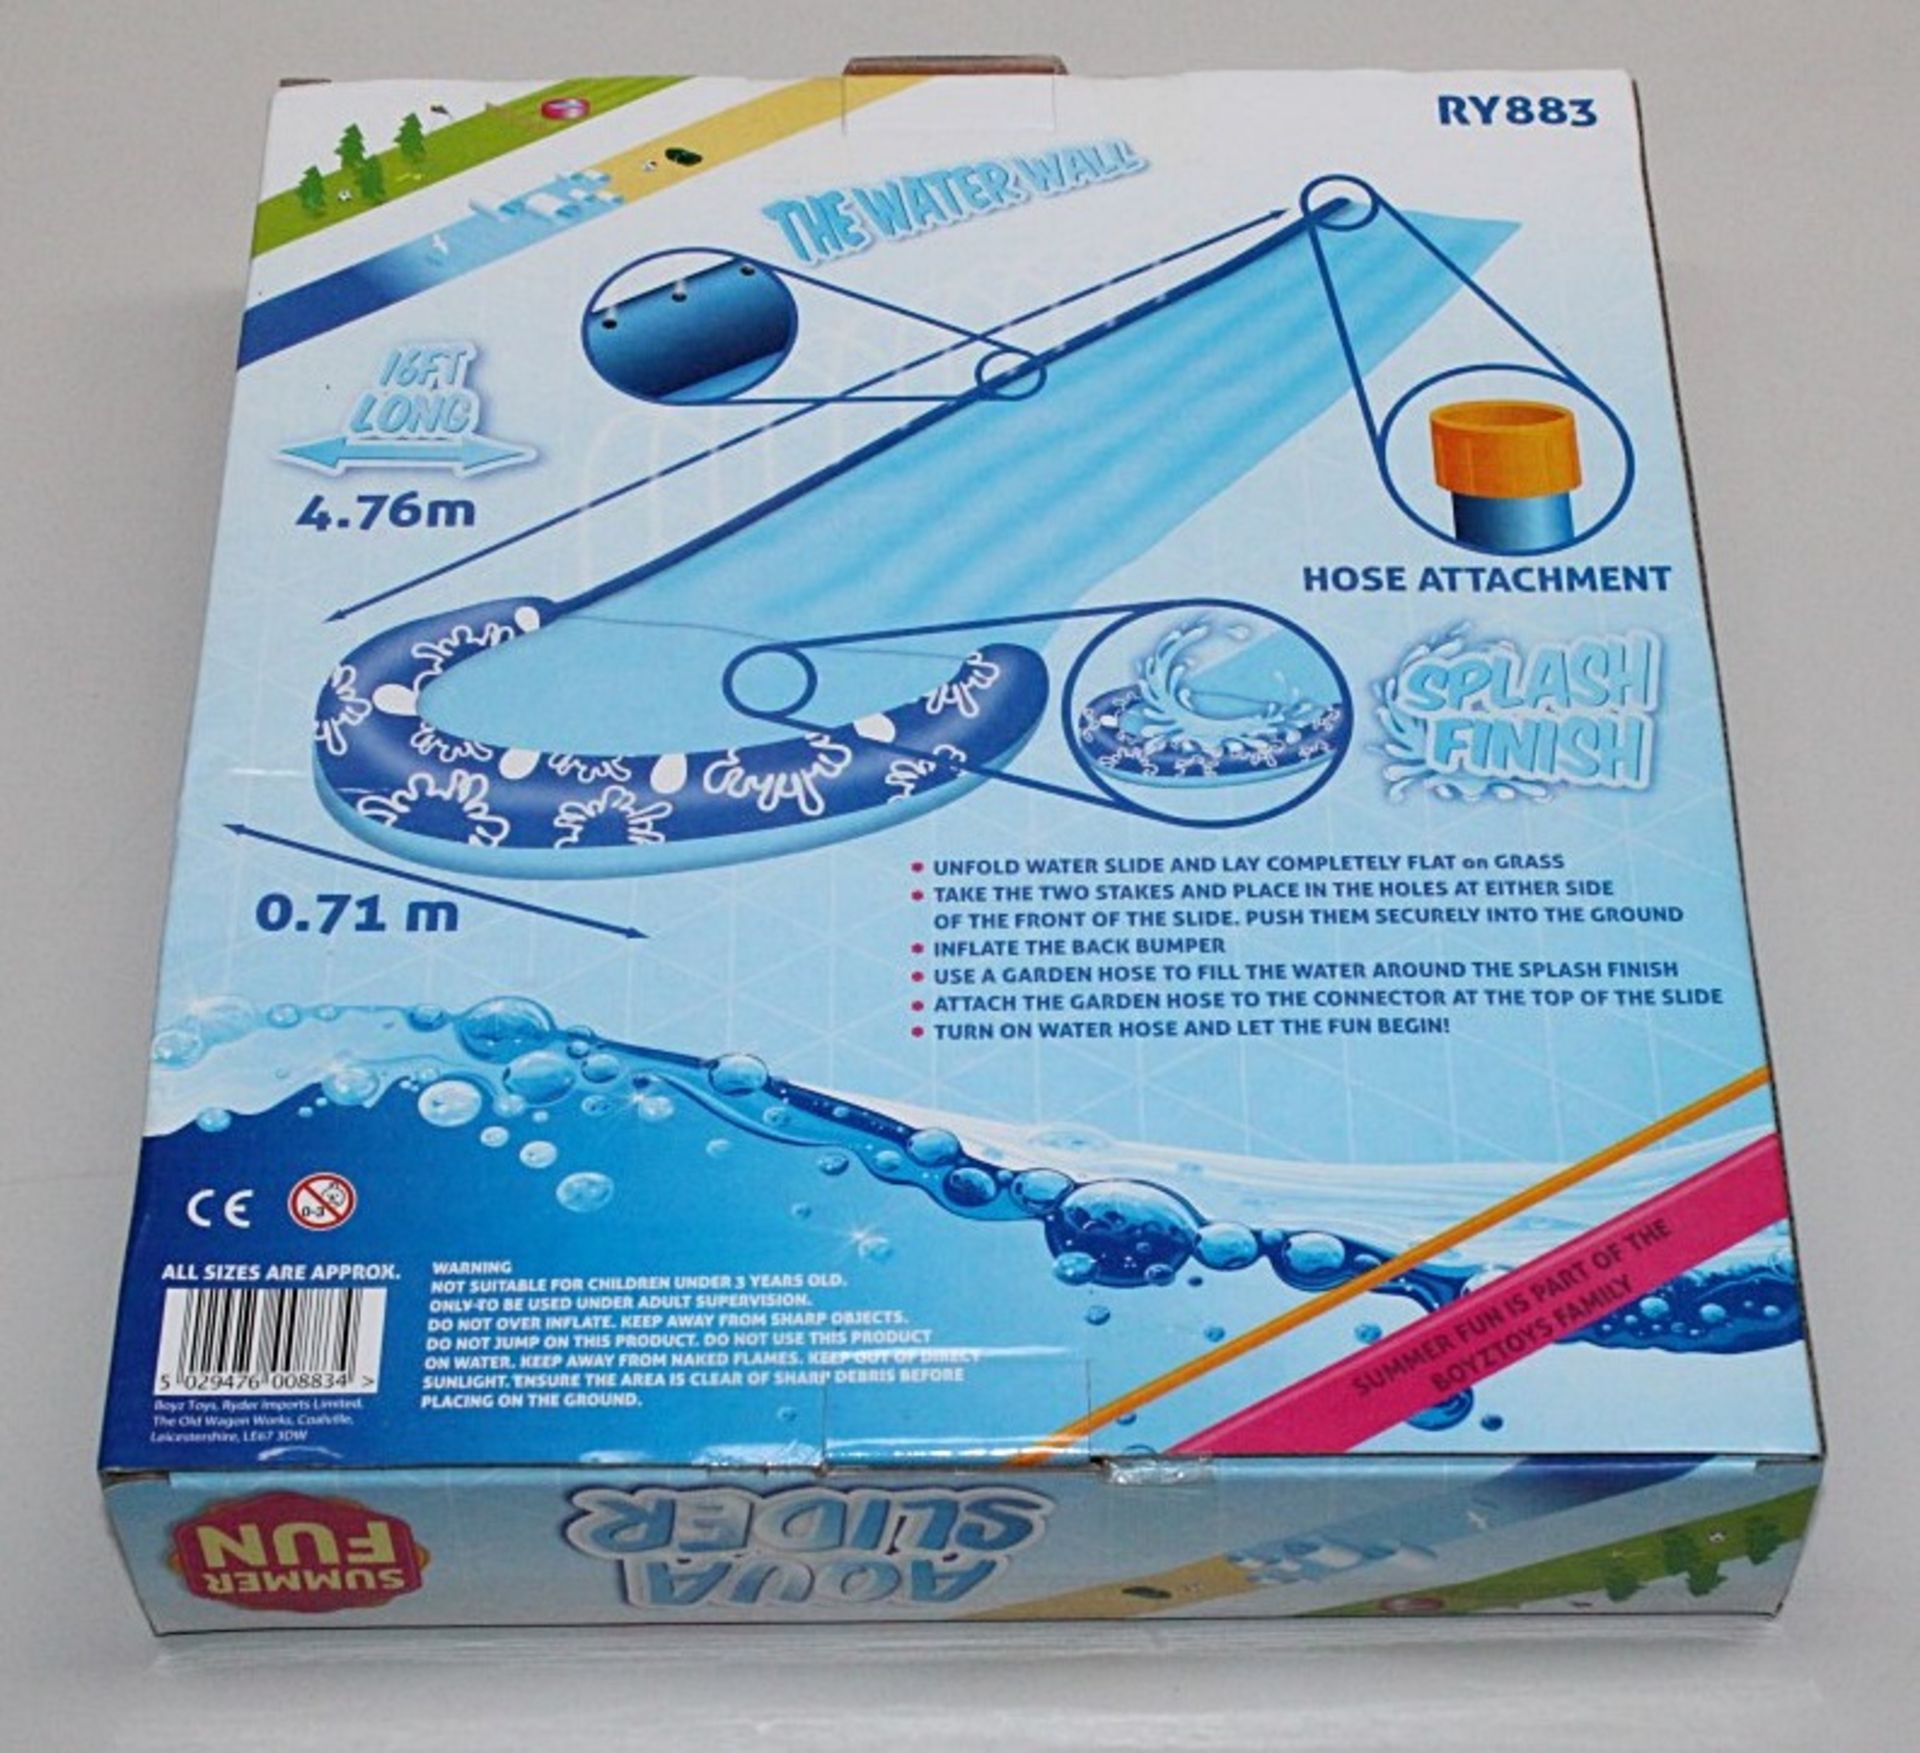 1 x "Aqua-Slider" 16ft Water Slide - Garden Slip-n-Slide Inflatable Toy - Brand New & Boxed - - Image 2 of 4